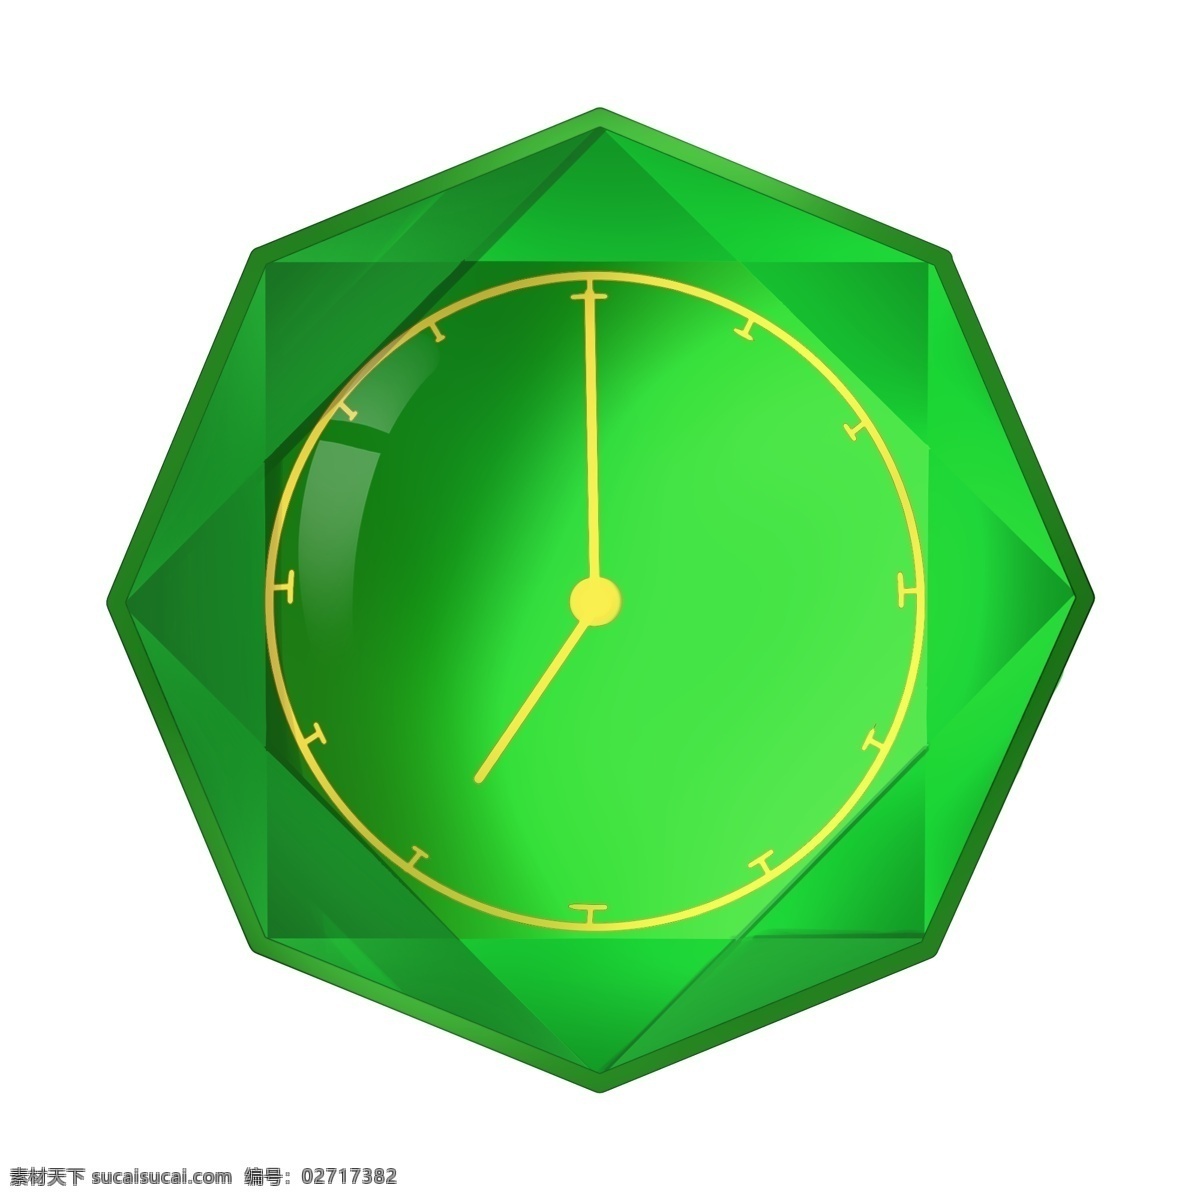 大 颗 绿色 钻石 钟表 翠绿色 彩钻 切割 棱角 闪光 光感 立体 时钟 时间 时光 24小时 奢华 华丽 装饰 免扣png